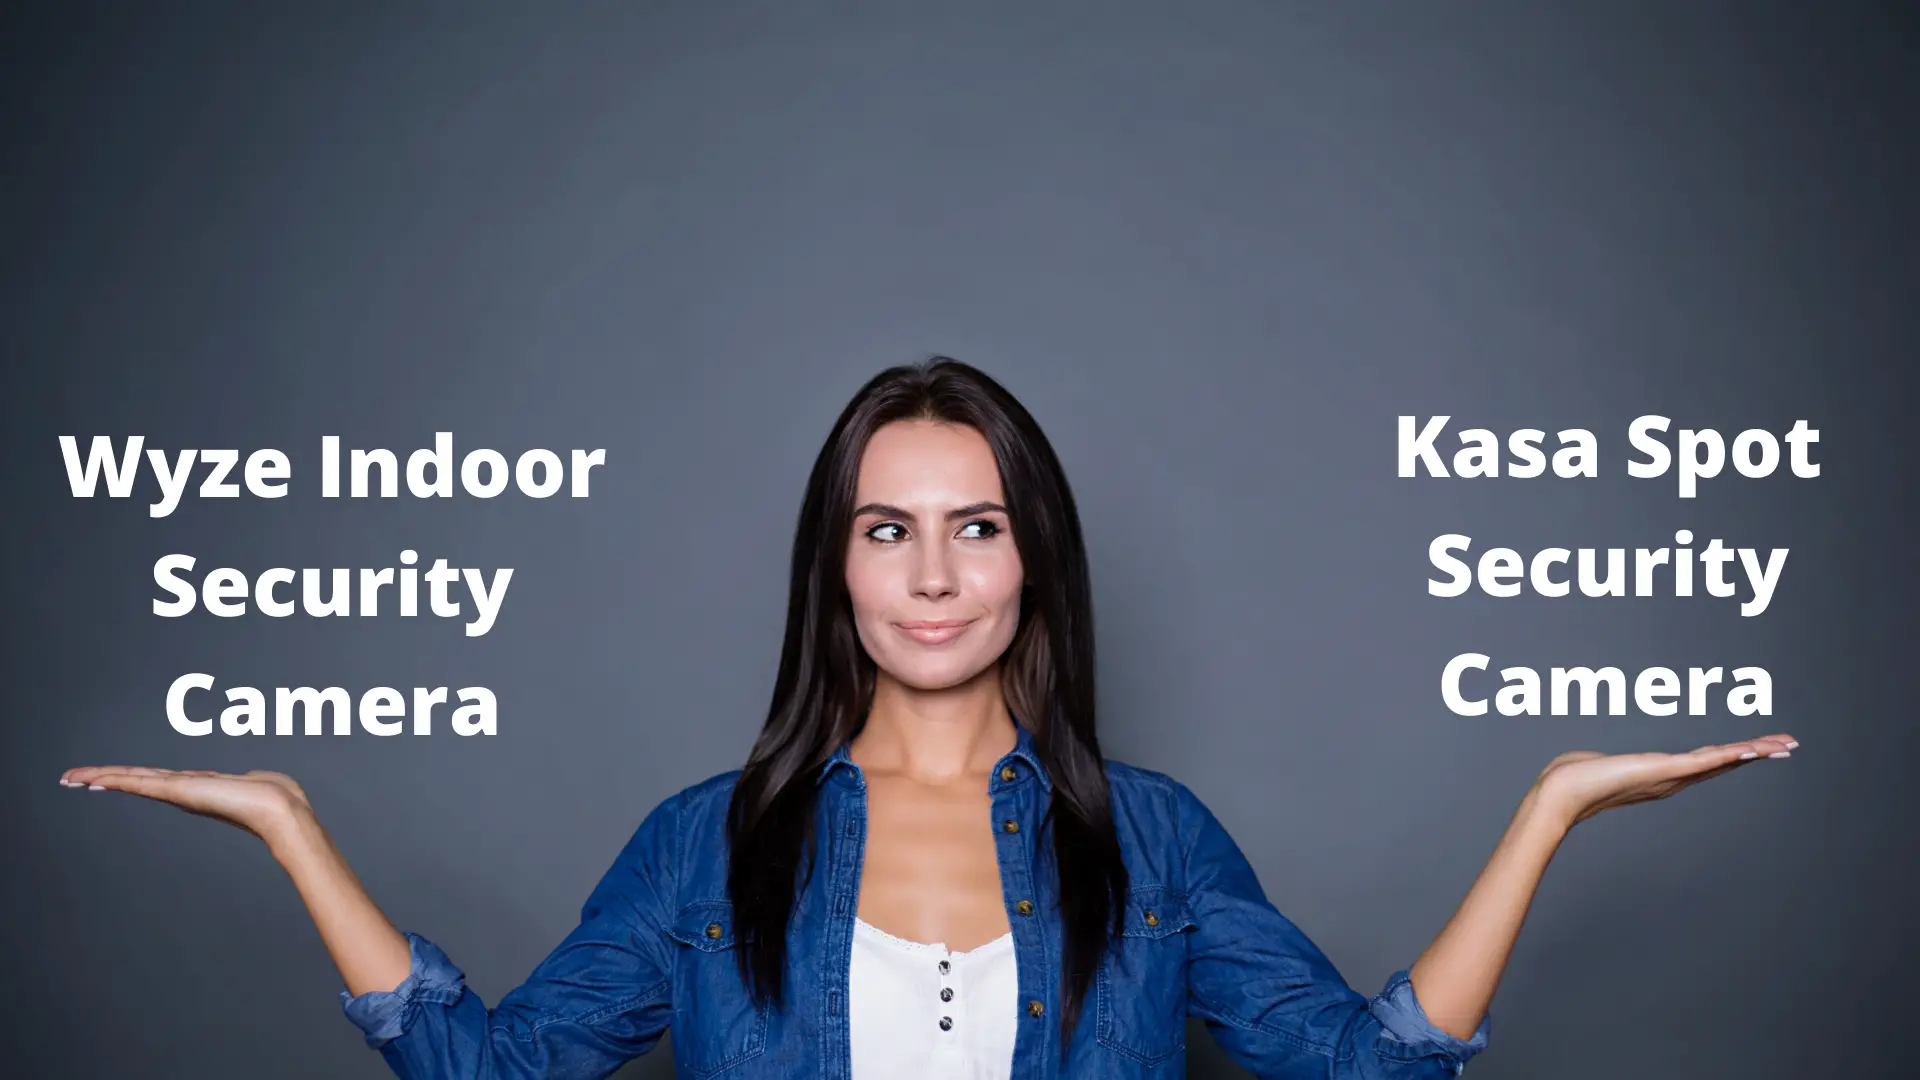 Wyze v Kasa Spot security cameras compared